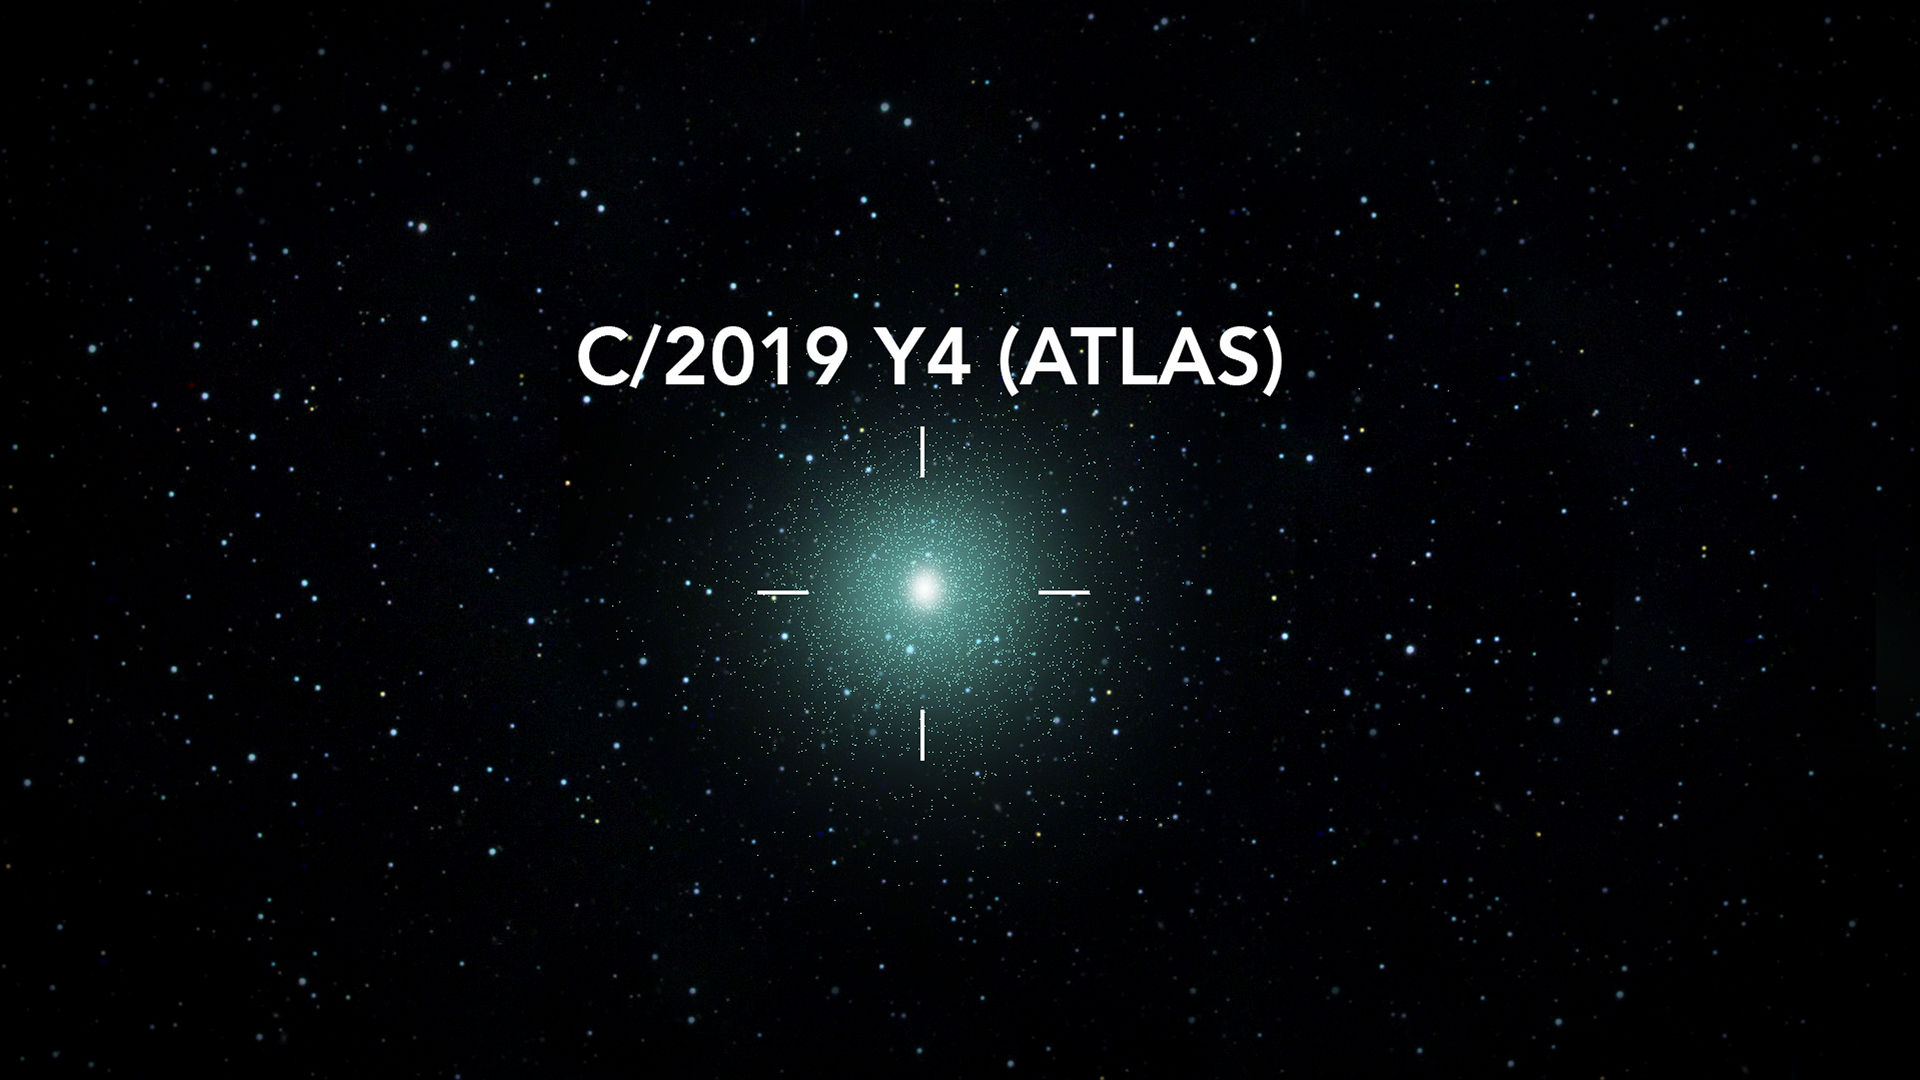 C/2019 Y4 (ATLAS): The Brightest Comet In Decades?